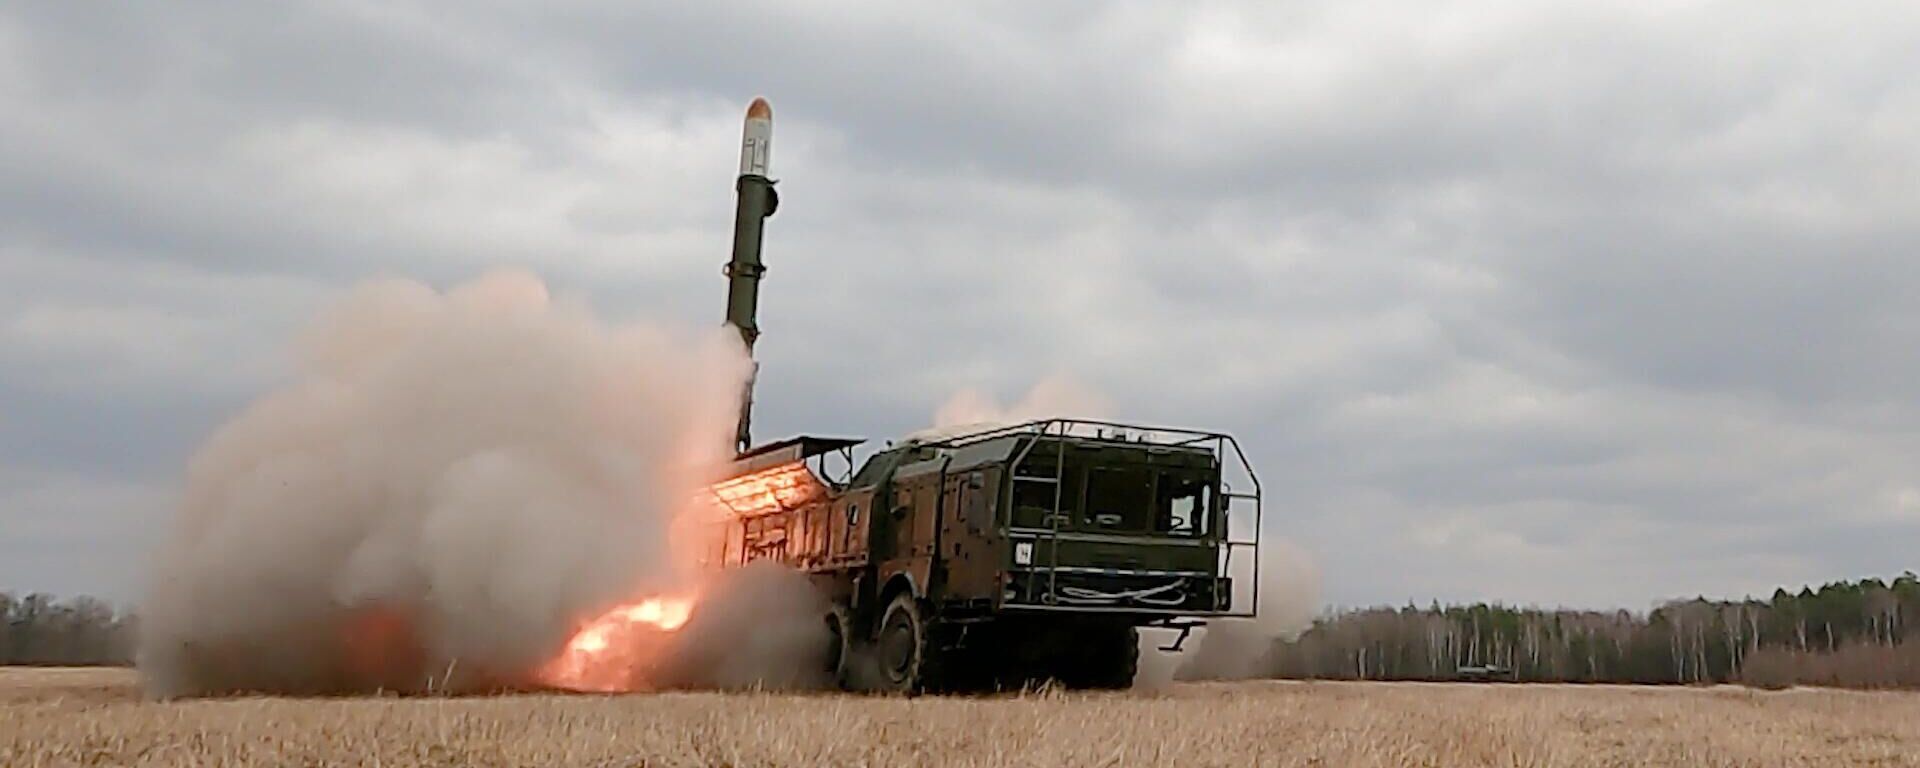 Удар оперативно-тактическим ракетным комплексом Искандер по объектам ВСУ на территории Украины - Sputnik Latvija, 1920, 27.05.2022